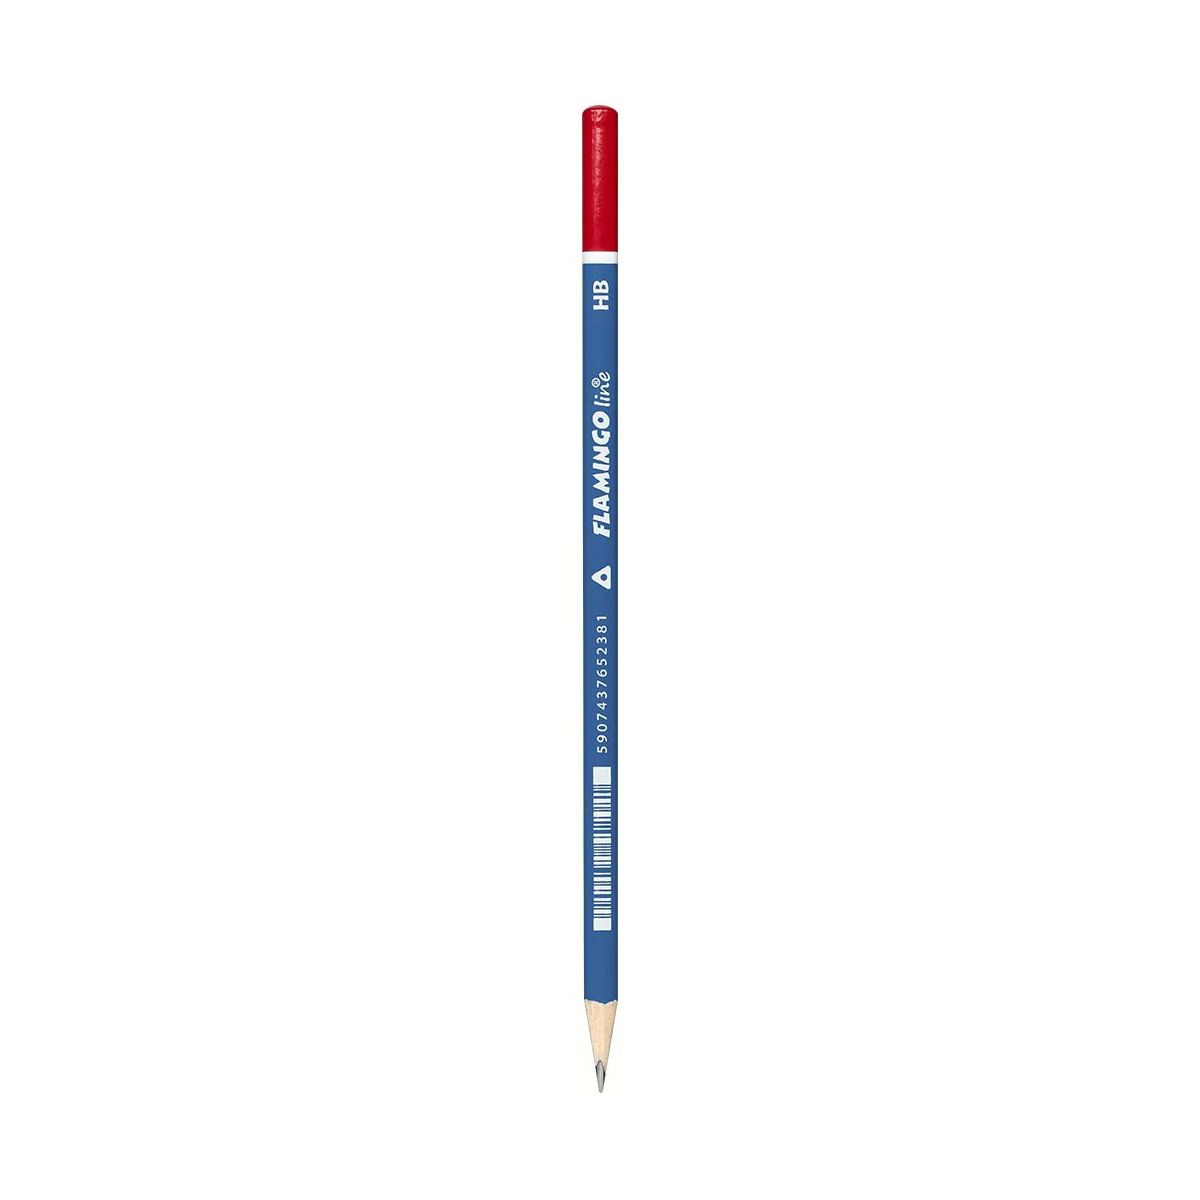 Ołówki techniczne Comfort Grip Flamingo line trójkątne HB 12 szt.